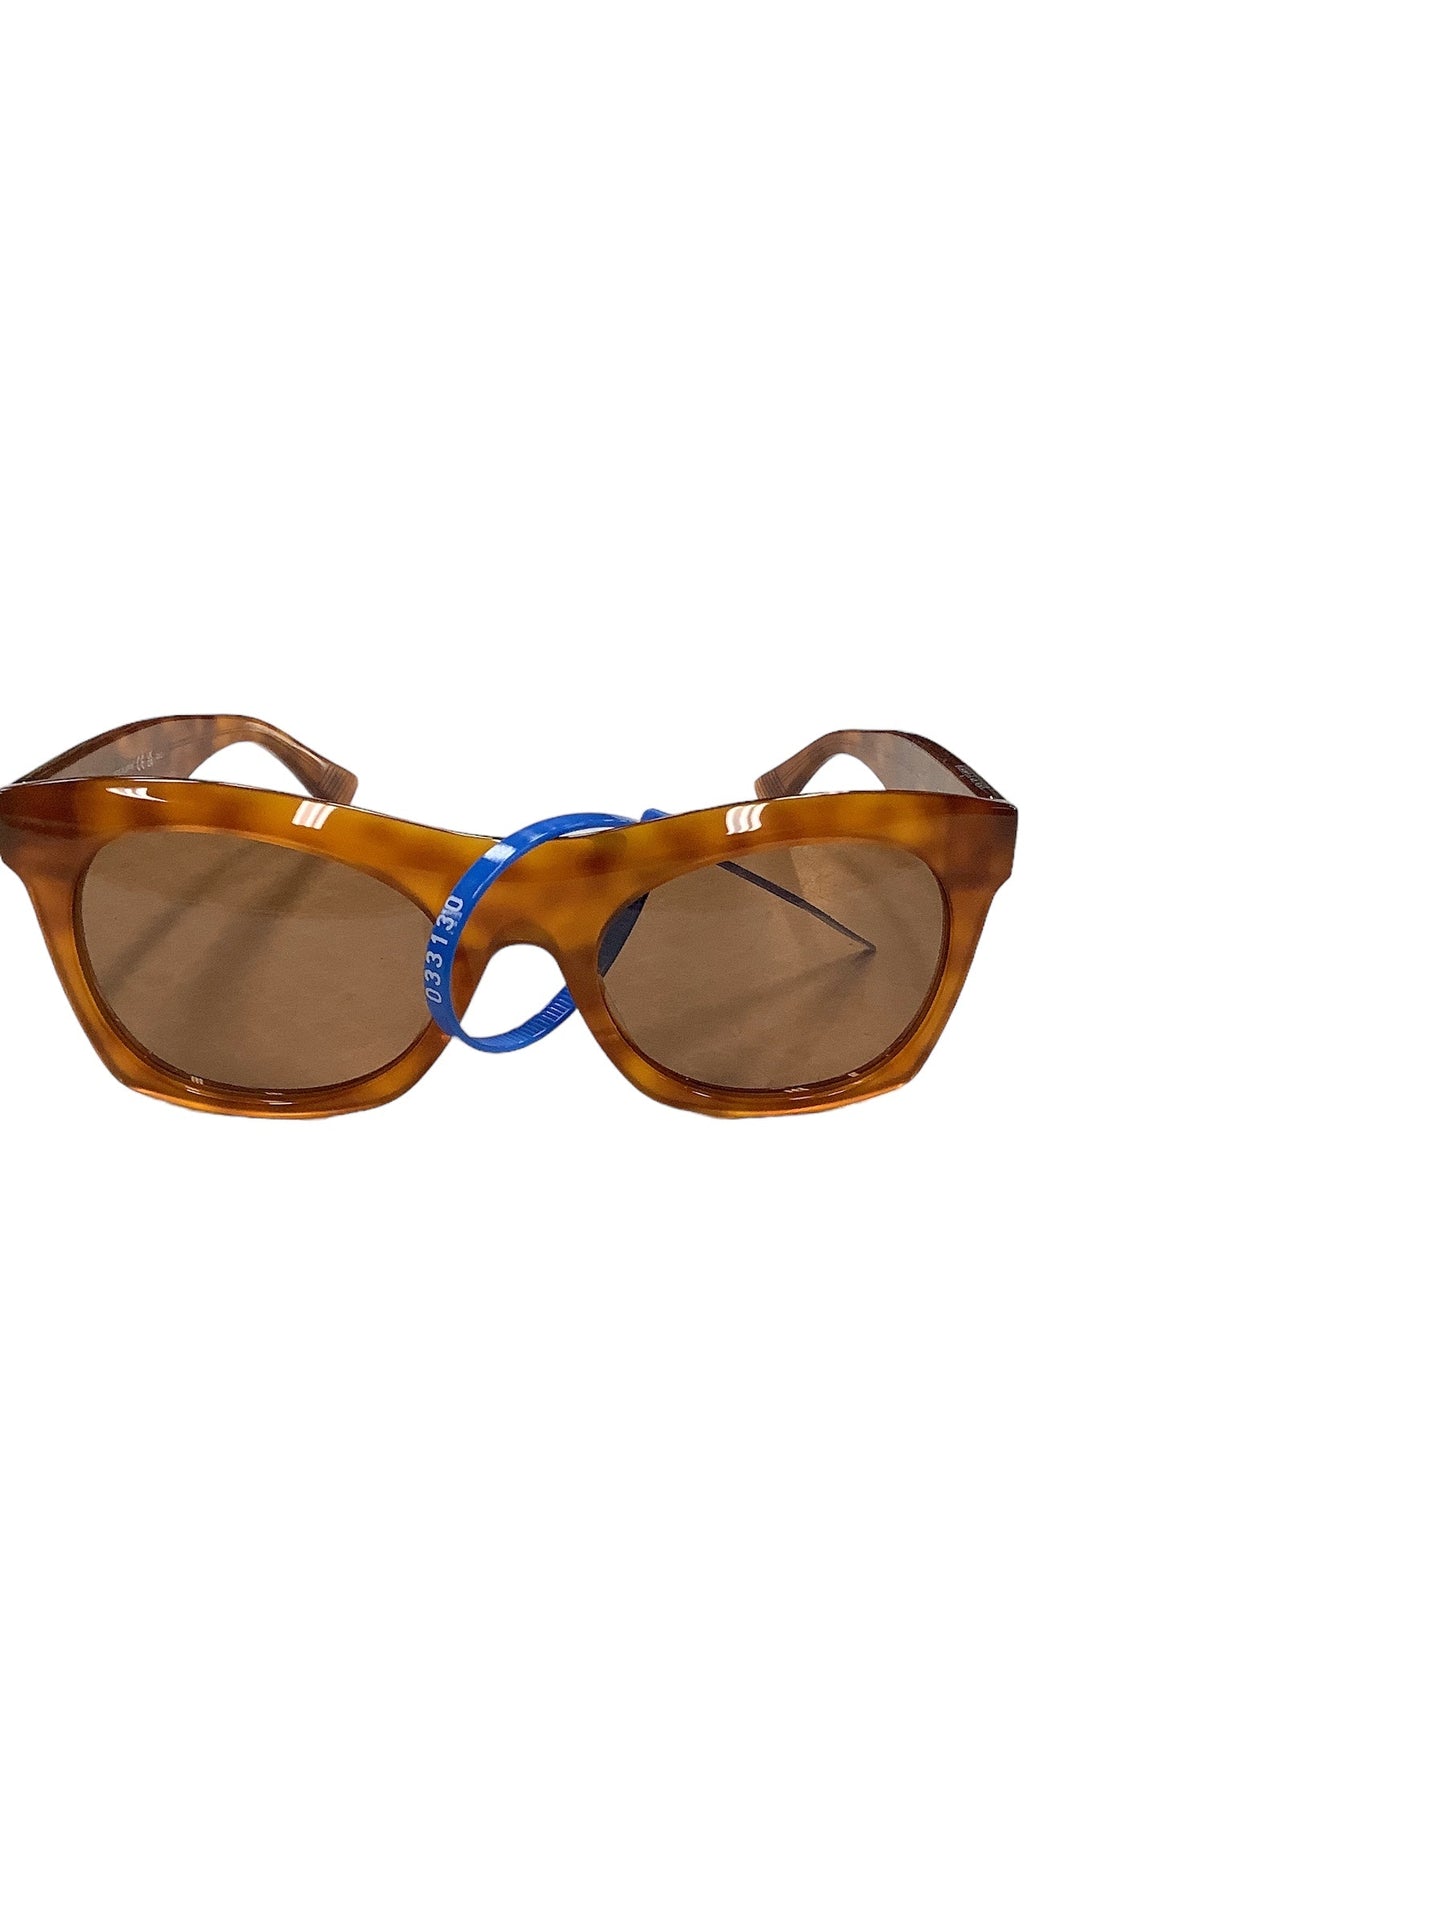 Sunglasses Luxury Designer Bottega Veneta